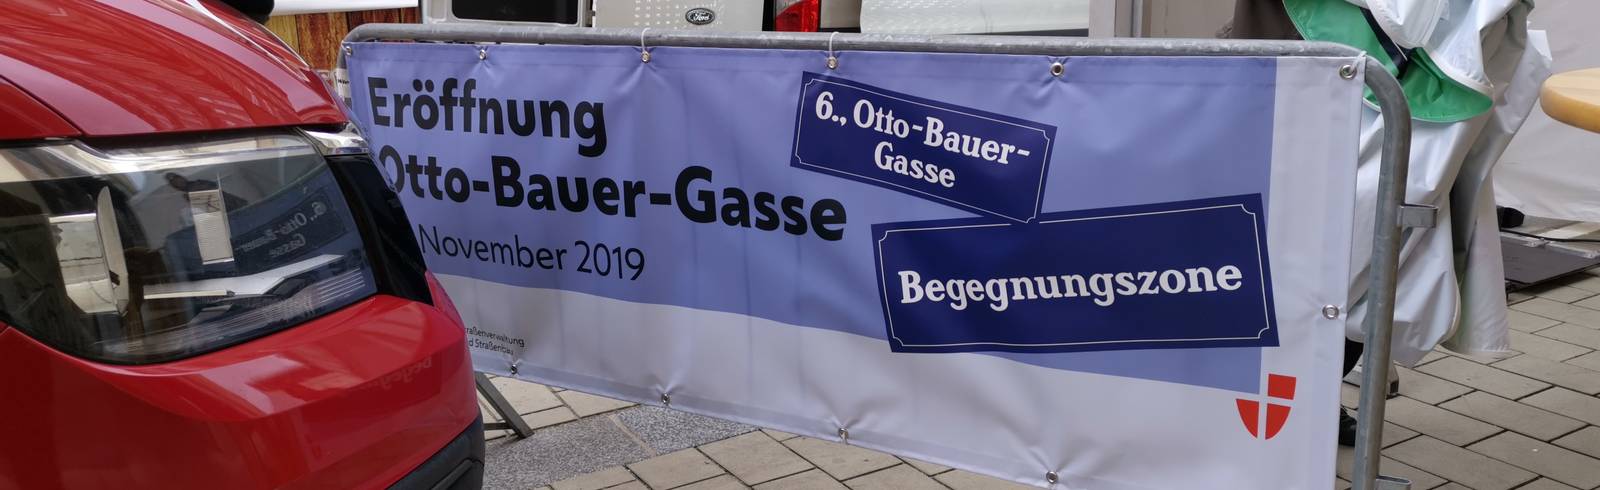 Bezirksflash: Begegnungszone Otto-Bauer-Gasse eröffnet